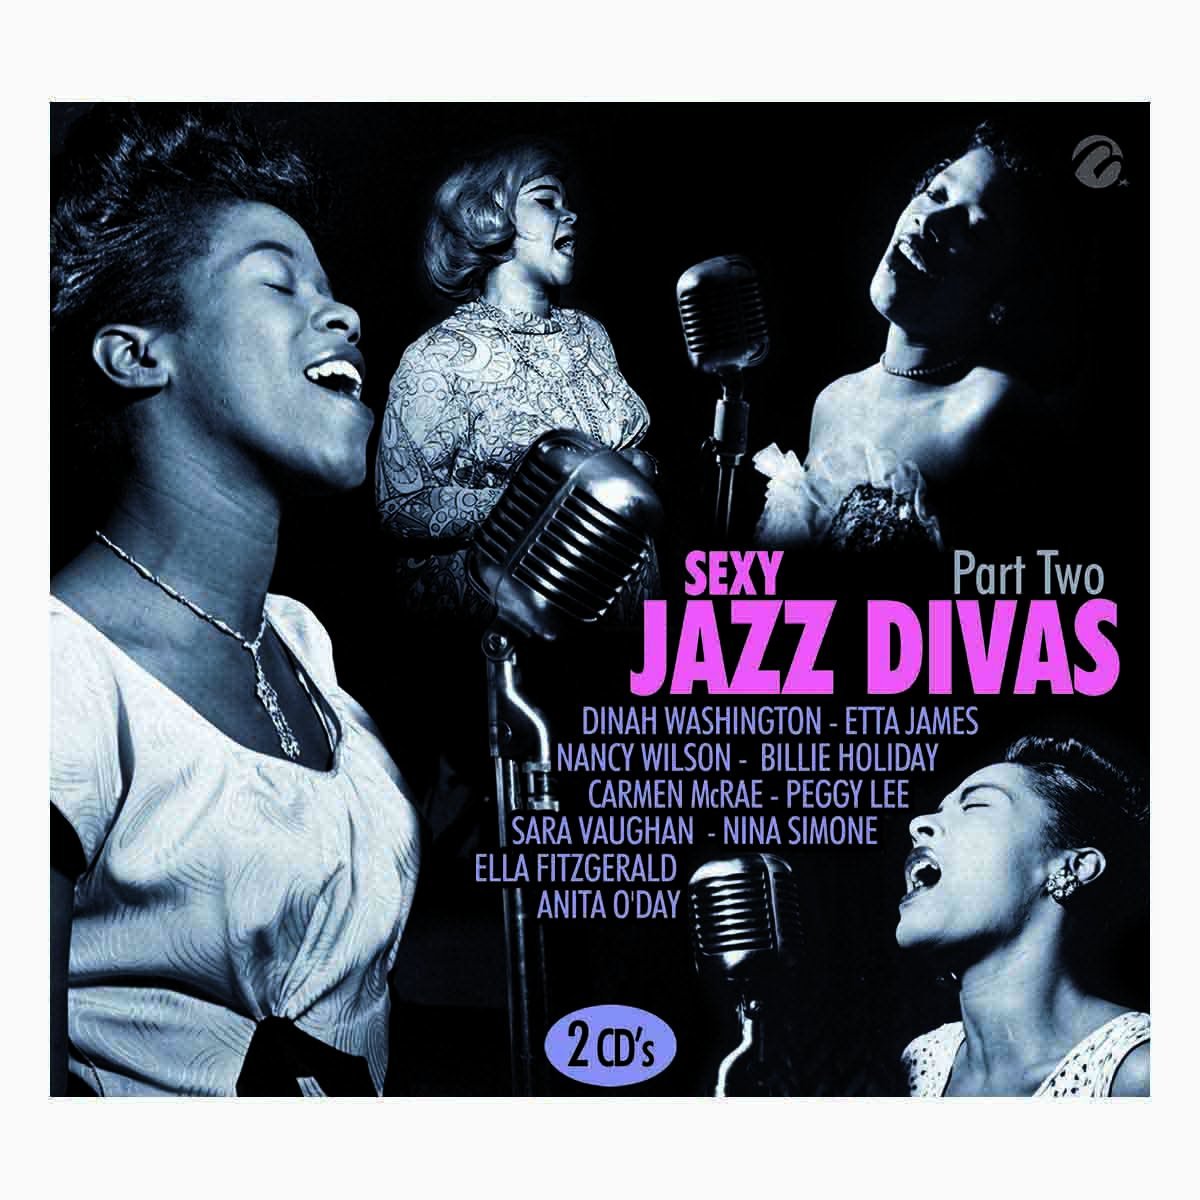 2 Cds Sexy Jazz Divas Part Two